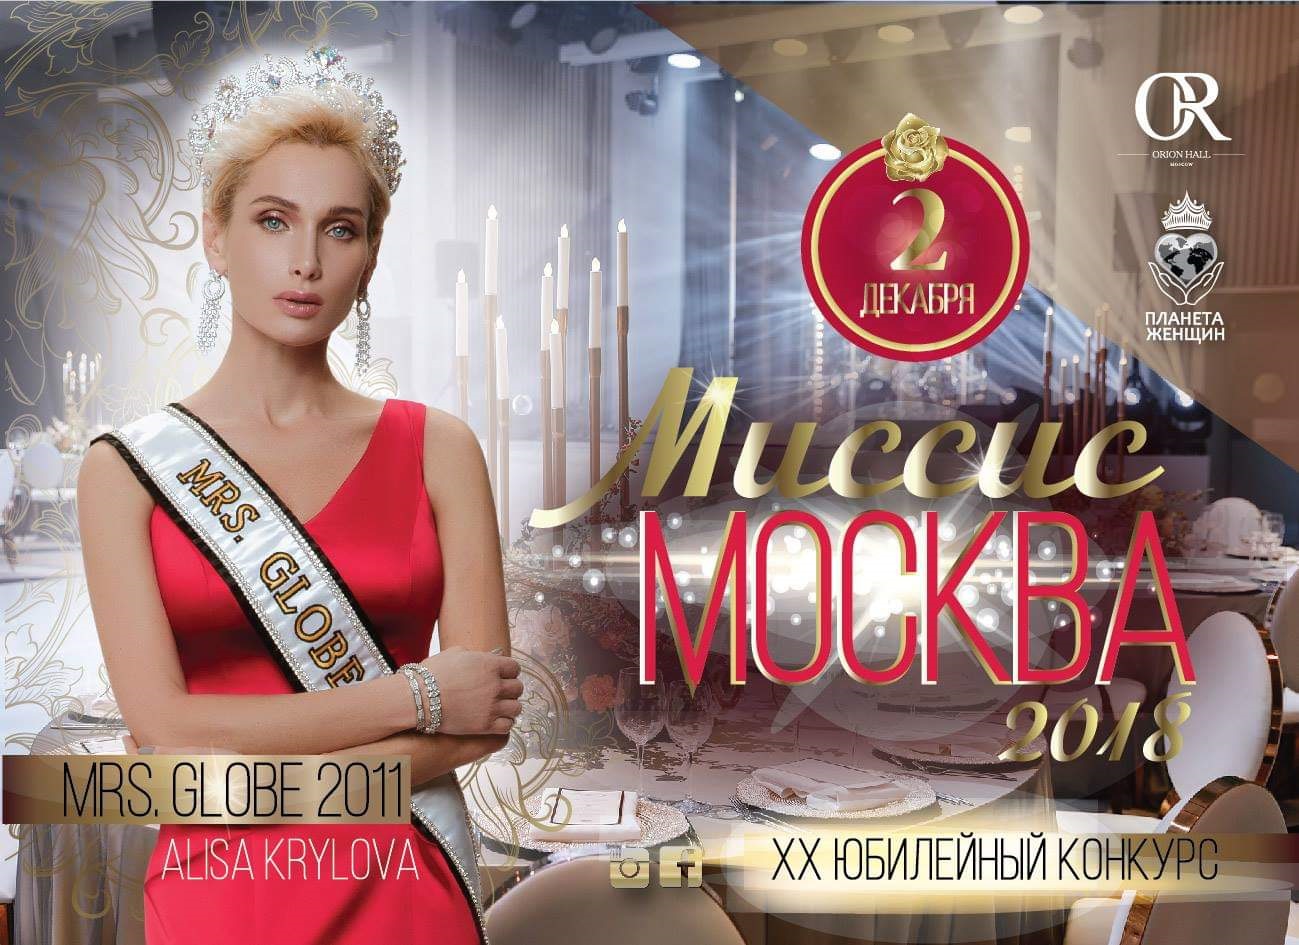 В Москве пройдет ежегодный конкурс для красивых мам «Миссис Москва 2018», фото